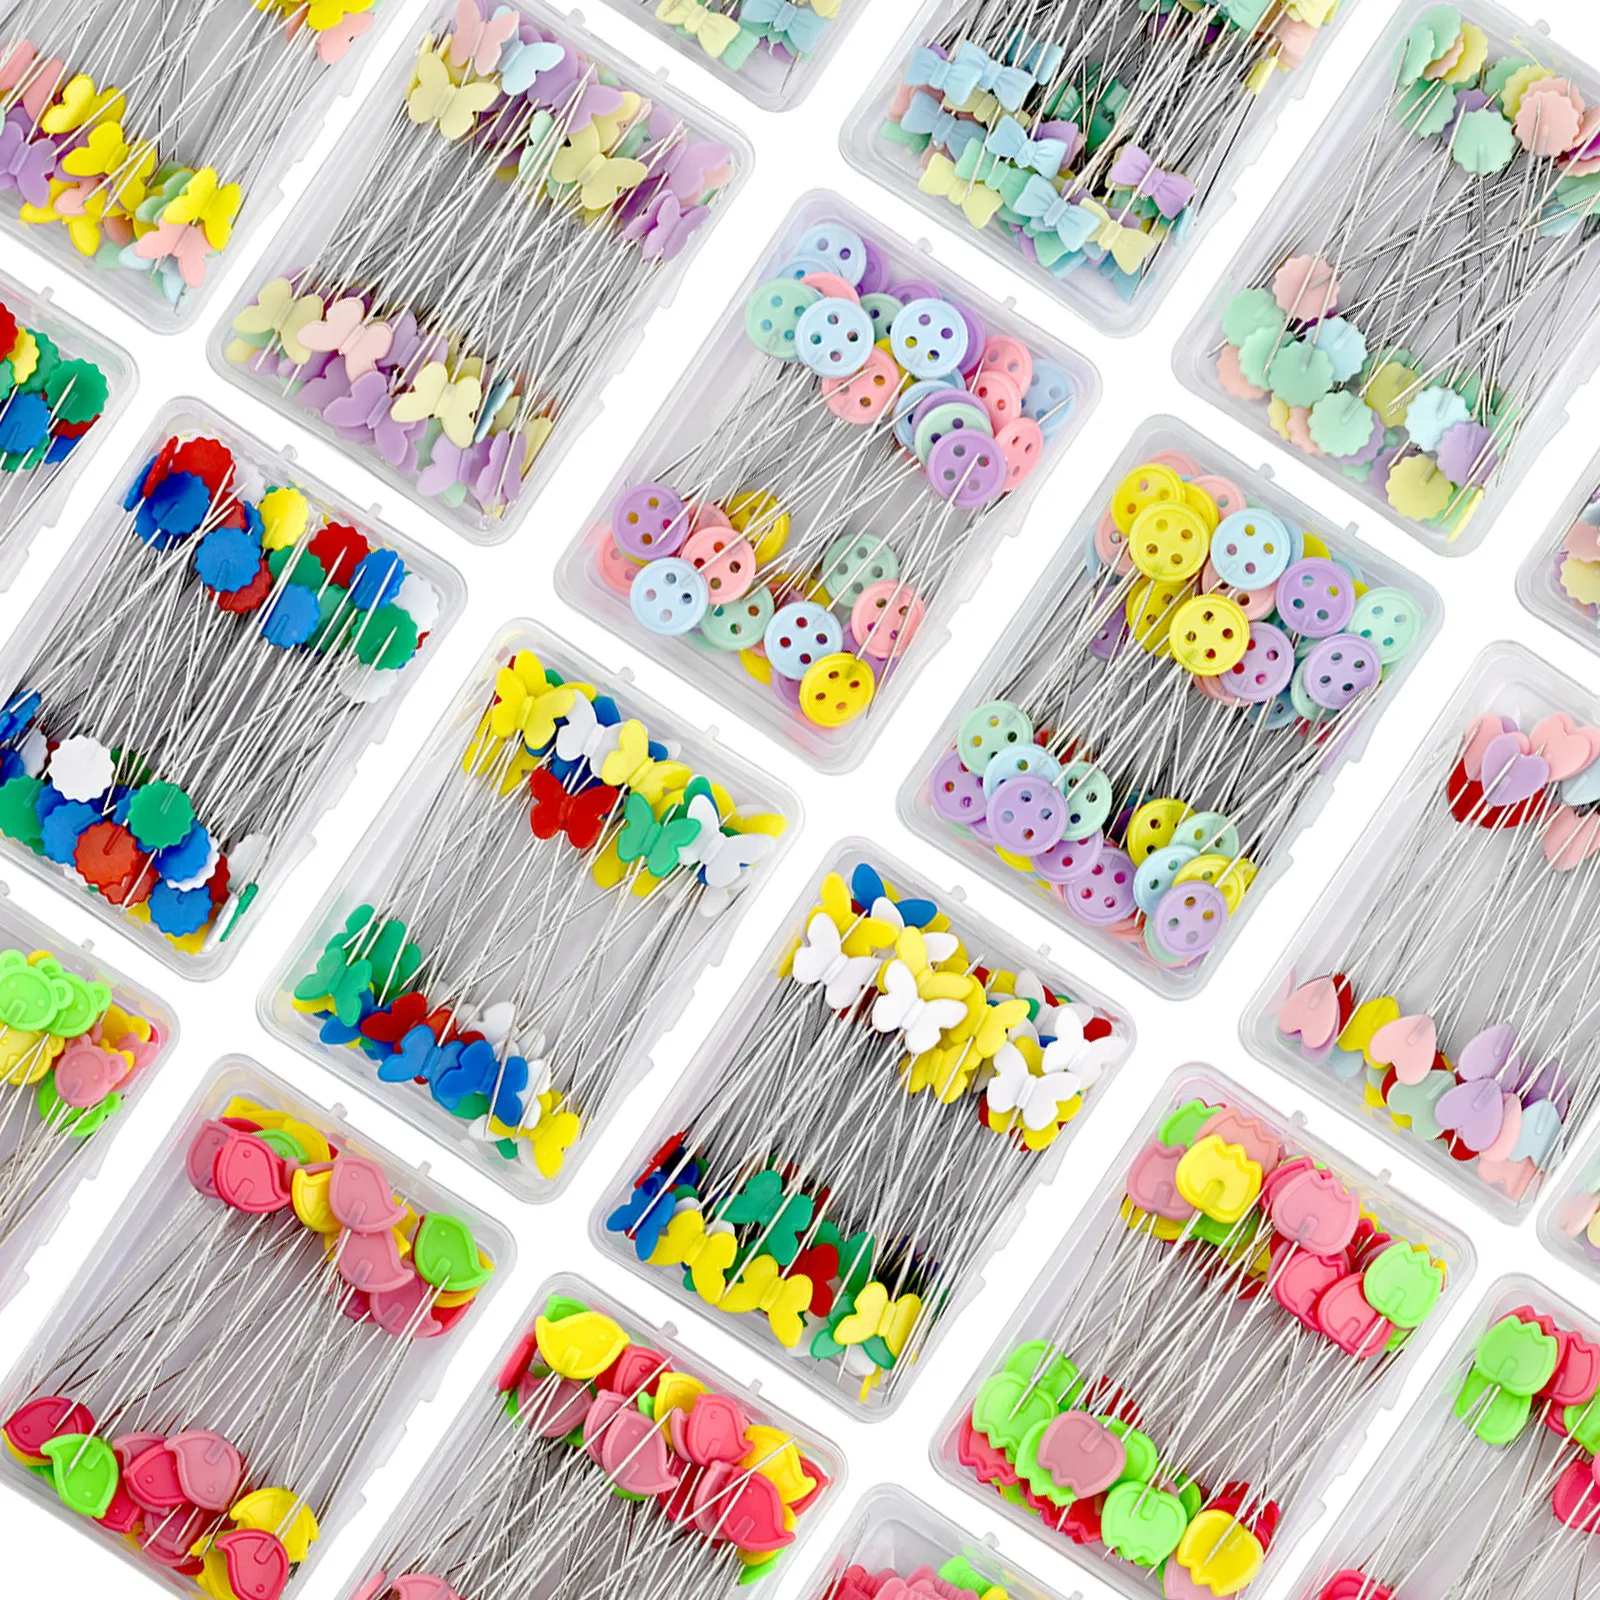 新しい洋裁ピン刺patパッチワークツール固定ピンボタンピンパッチワークピン縫製ポジショニングとdiy 50個/100個